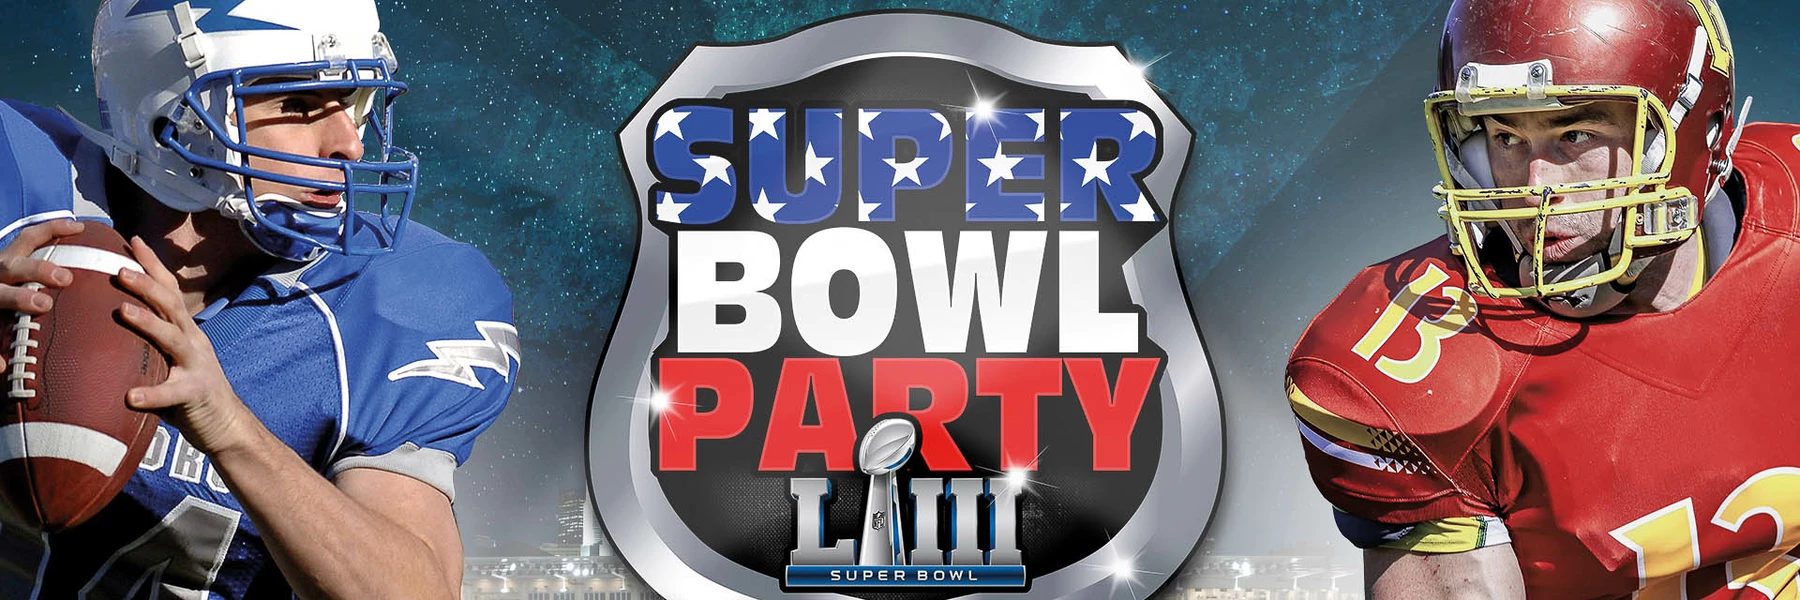 Die grösste Super Bowl Party in Zürich am 3.2.2019 in der Samsung Hall